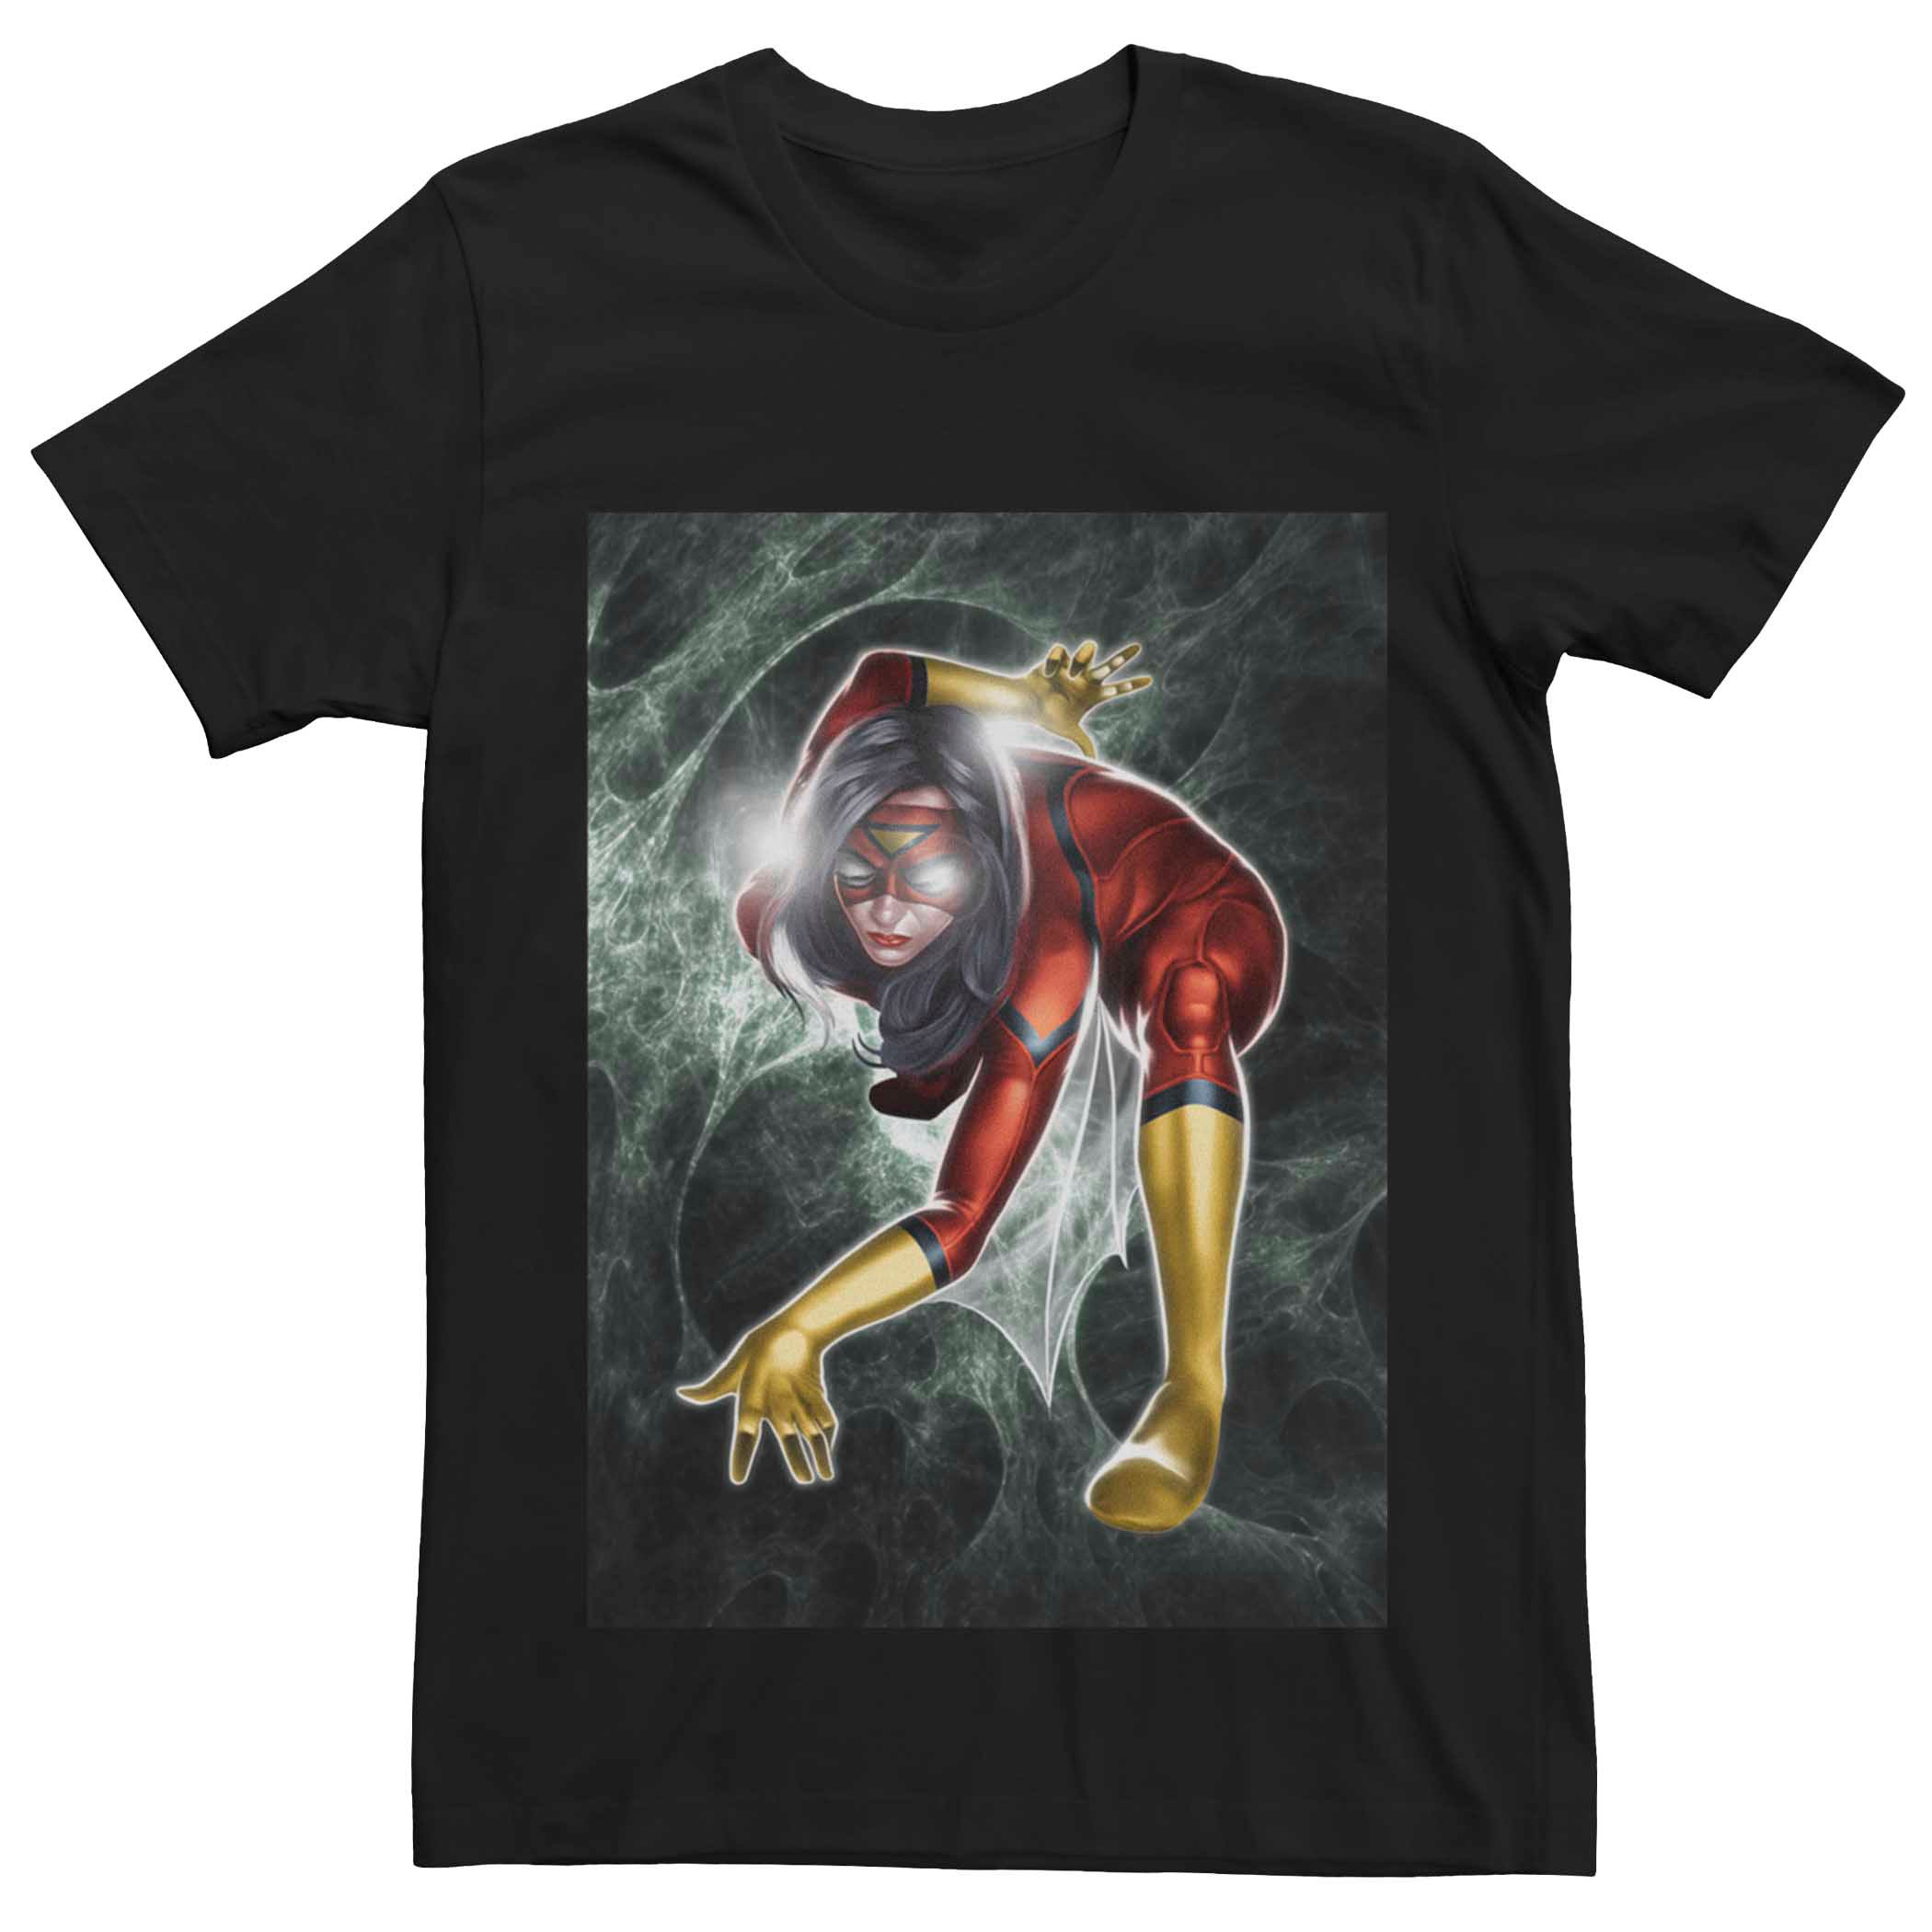 Мужская футболка с портретом в позе женщины-паука Marvel's Licensed Character